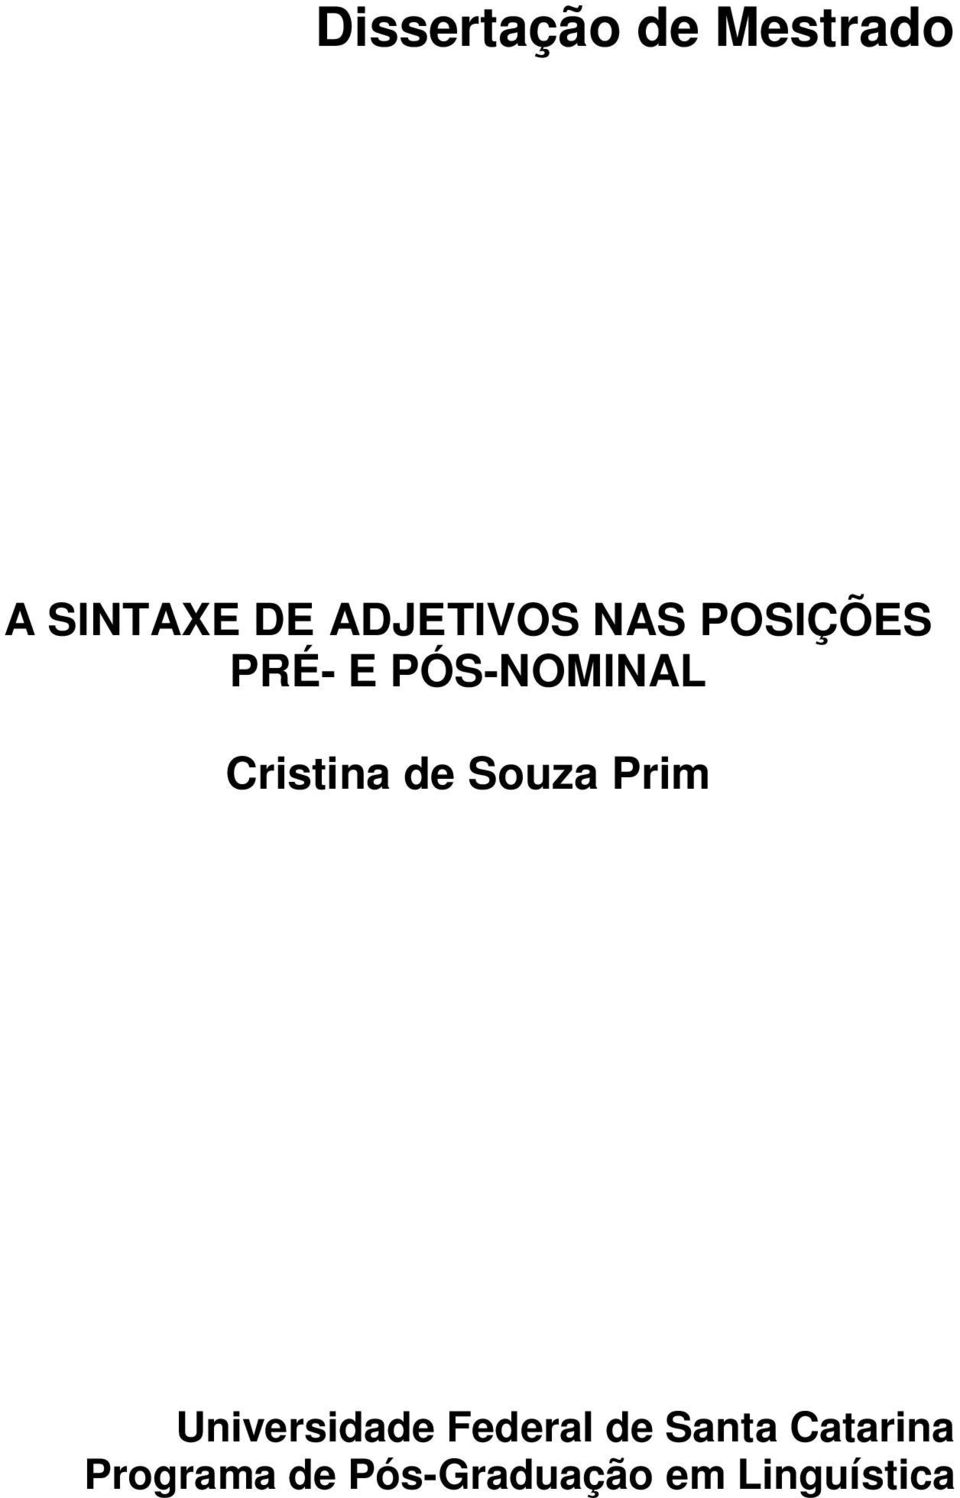 Cristina de Souza Prim Universidade Federal